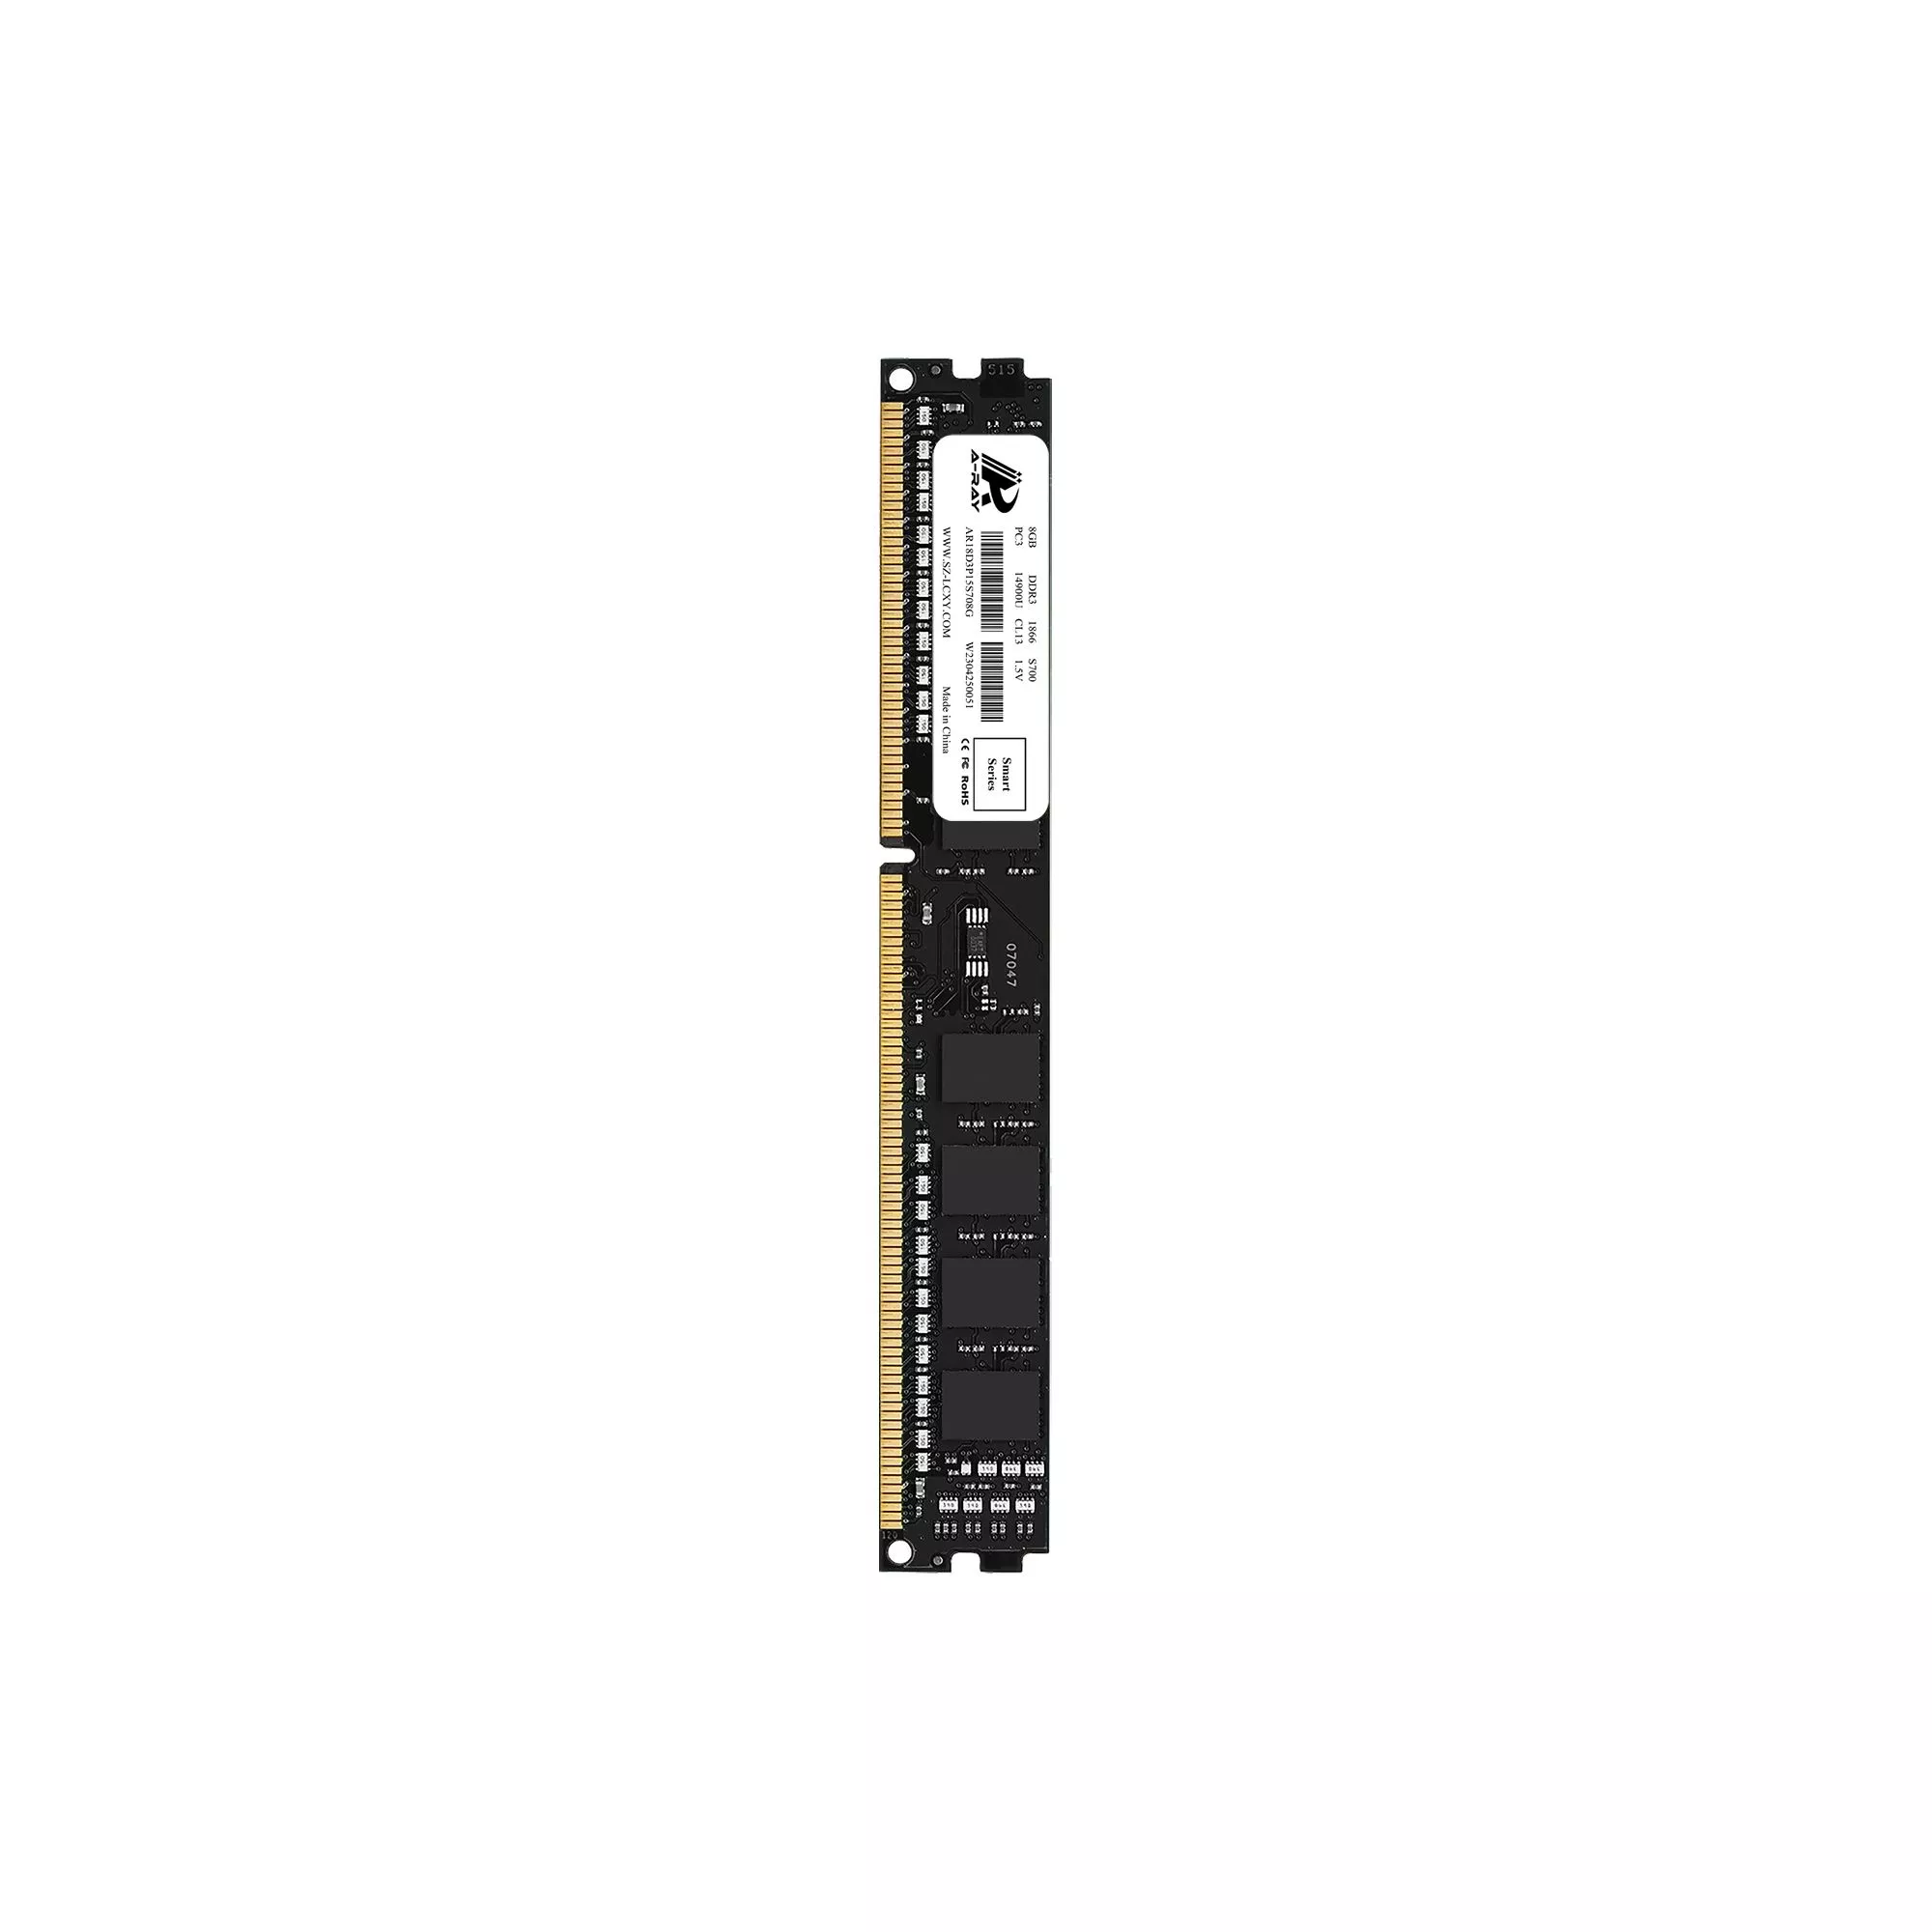 Ram A-Ray 8GB DDR3 Bus 1866 Mhz Desktop S700 14,928MB/s P/N: AR18D3P15S708G